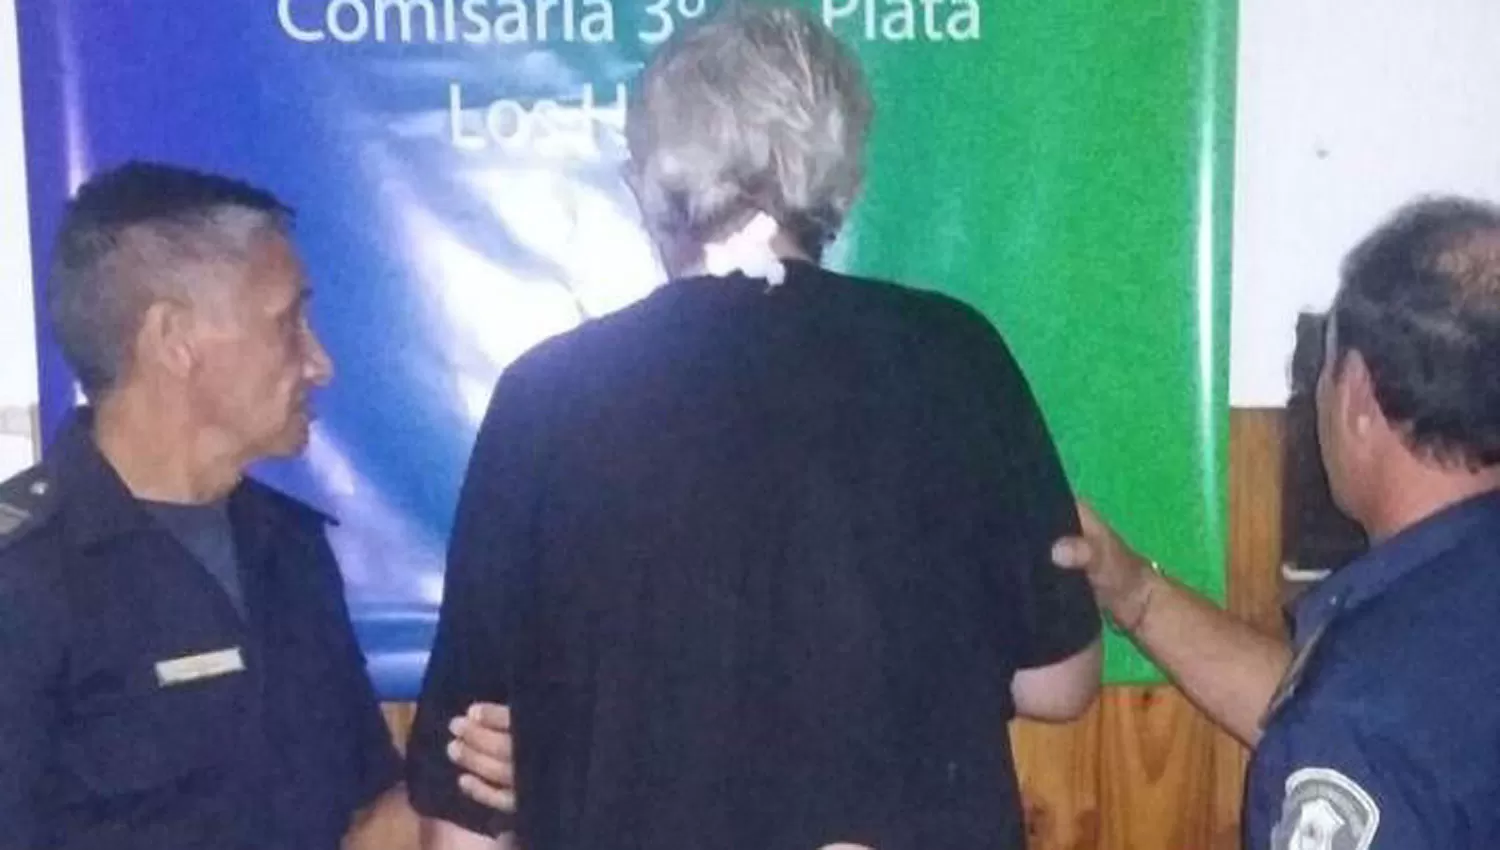 El acusado del crimen fue detenido en La Plata. FOTO TOMADA DE WWW.ELDIA.COM